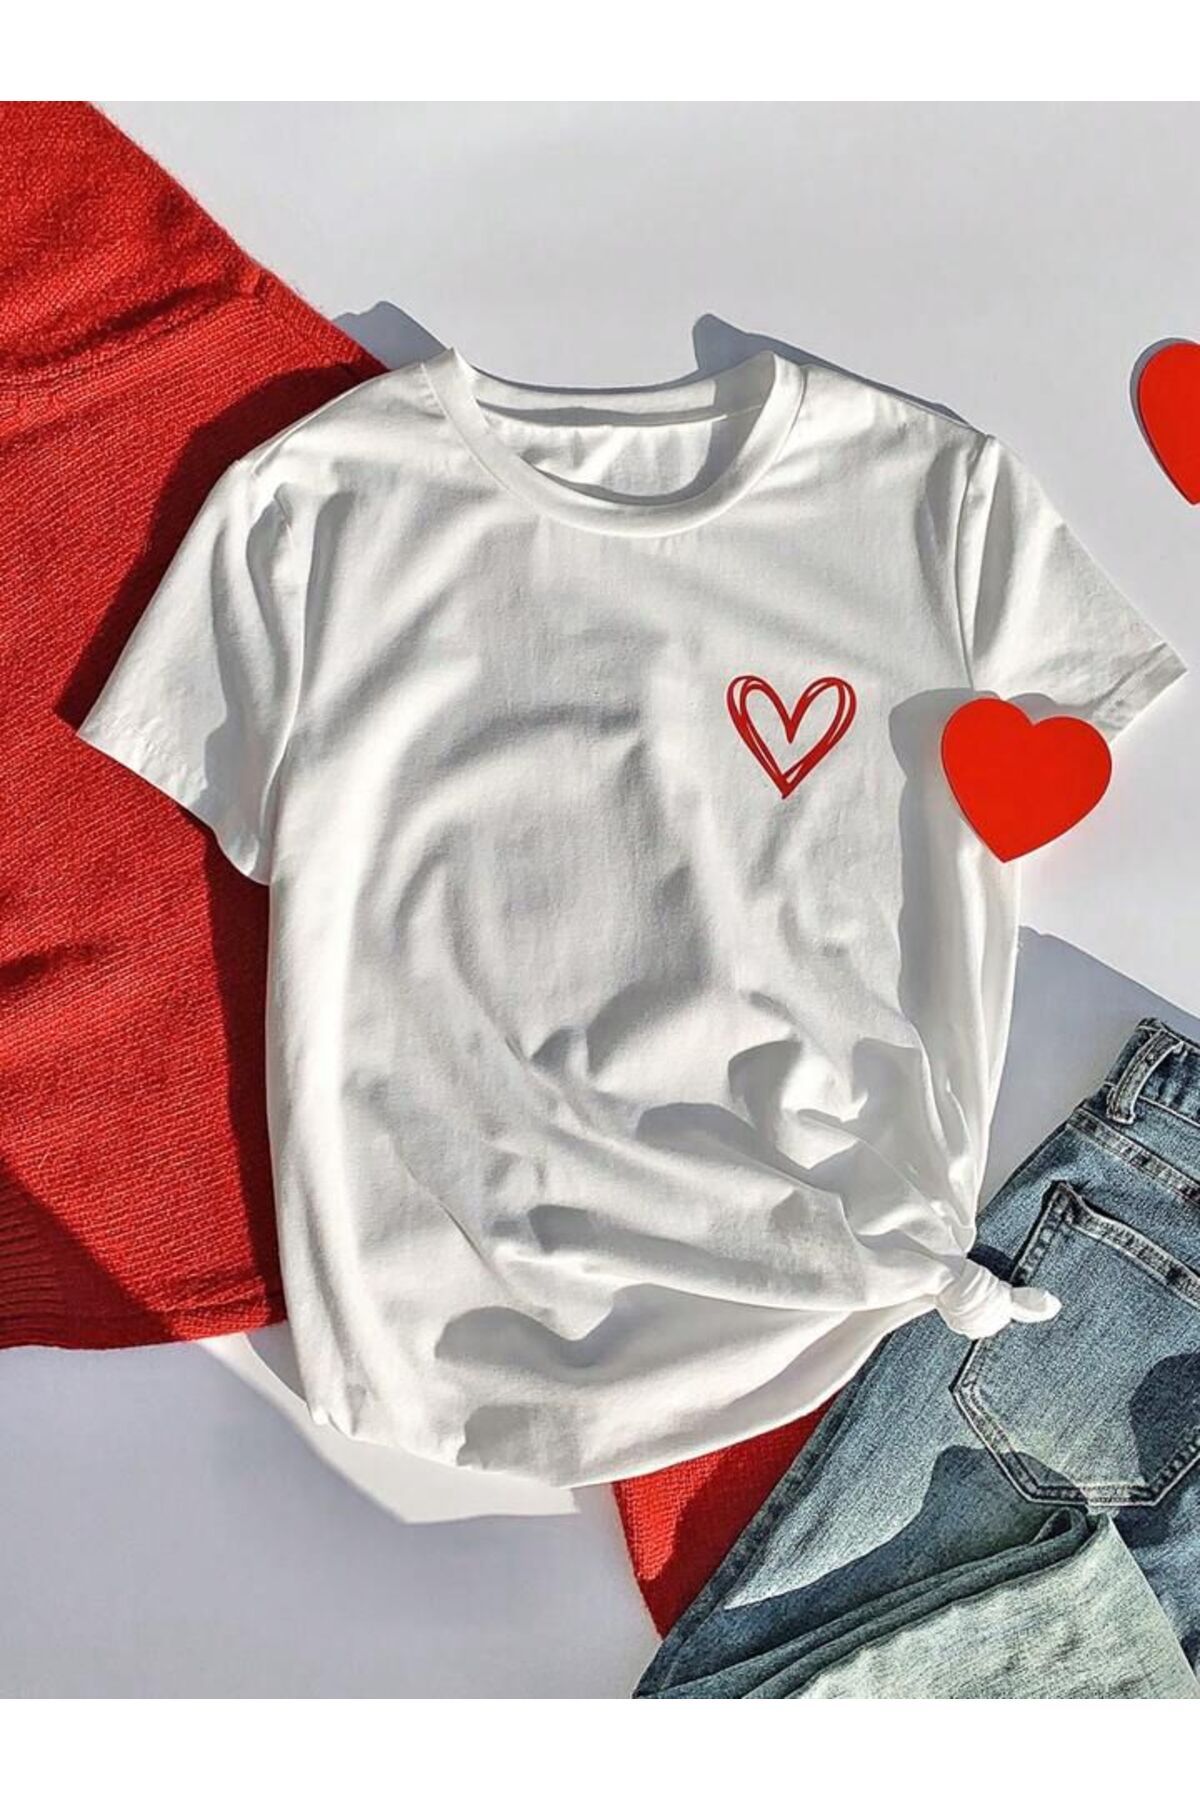 MORNİNG KİDS Kız Çocuk Kırmızı Minimal Kalp Baskılı Beyaz Çocuk Tshirt